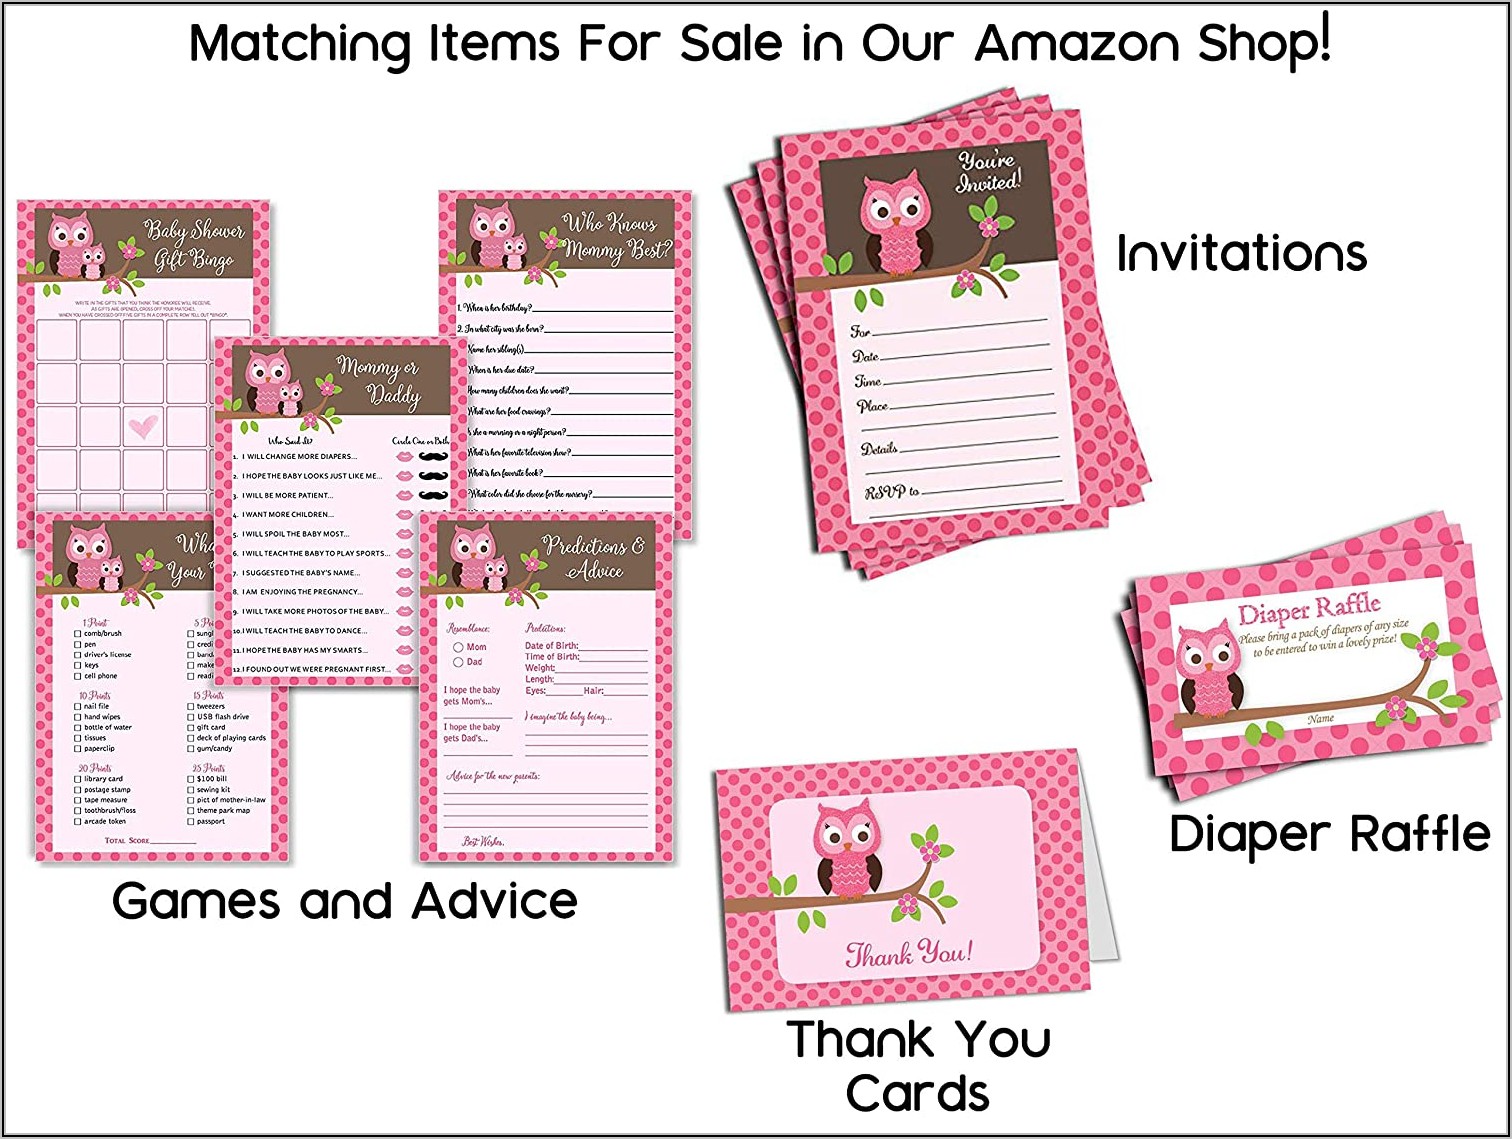 Baby Pink Envelopes 5x7